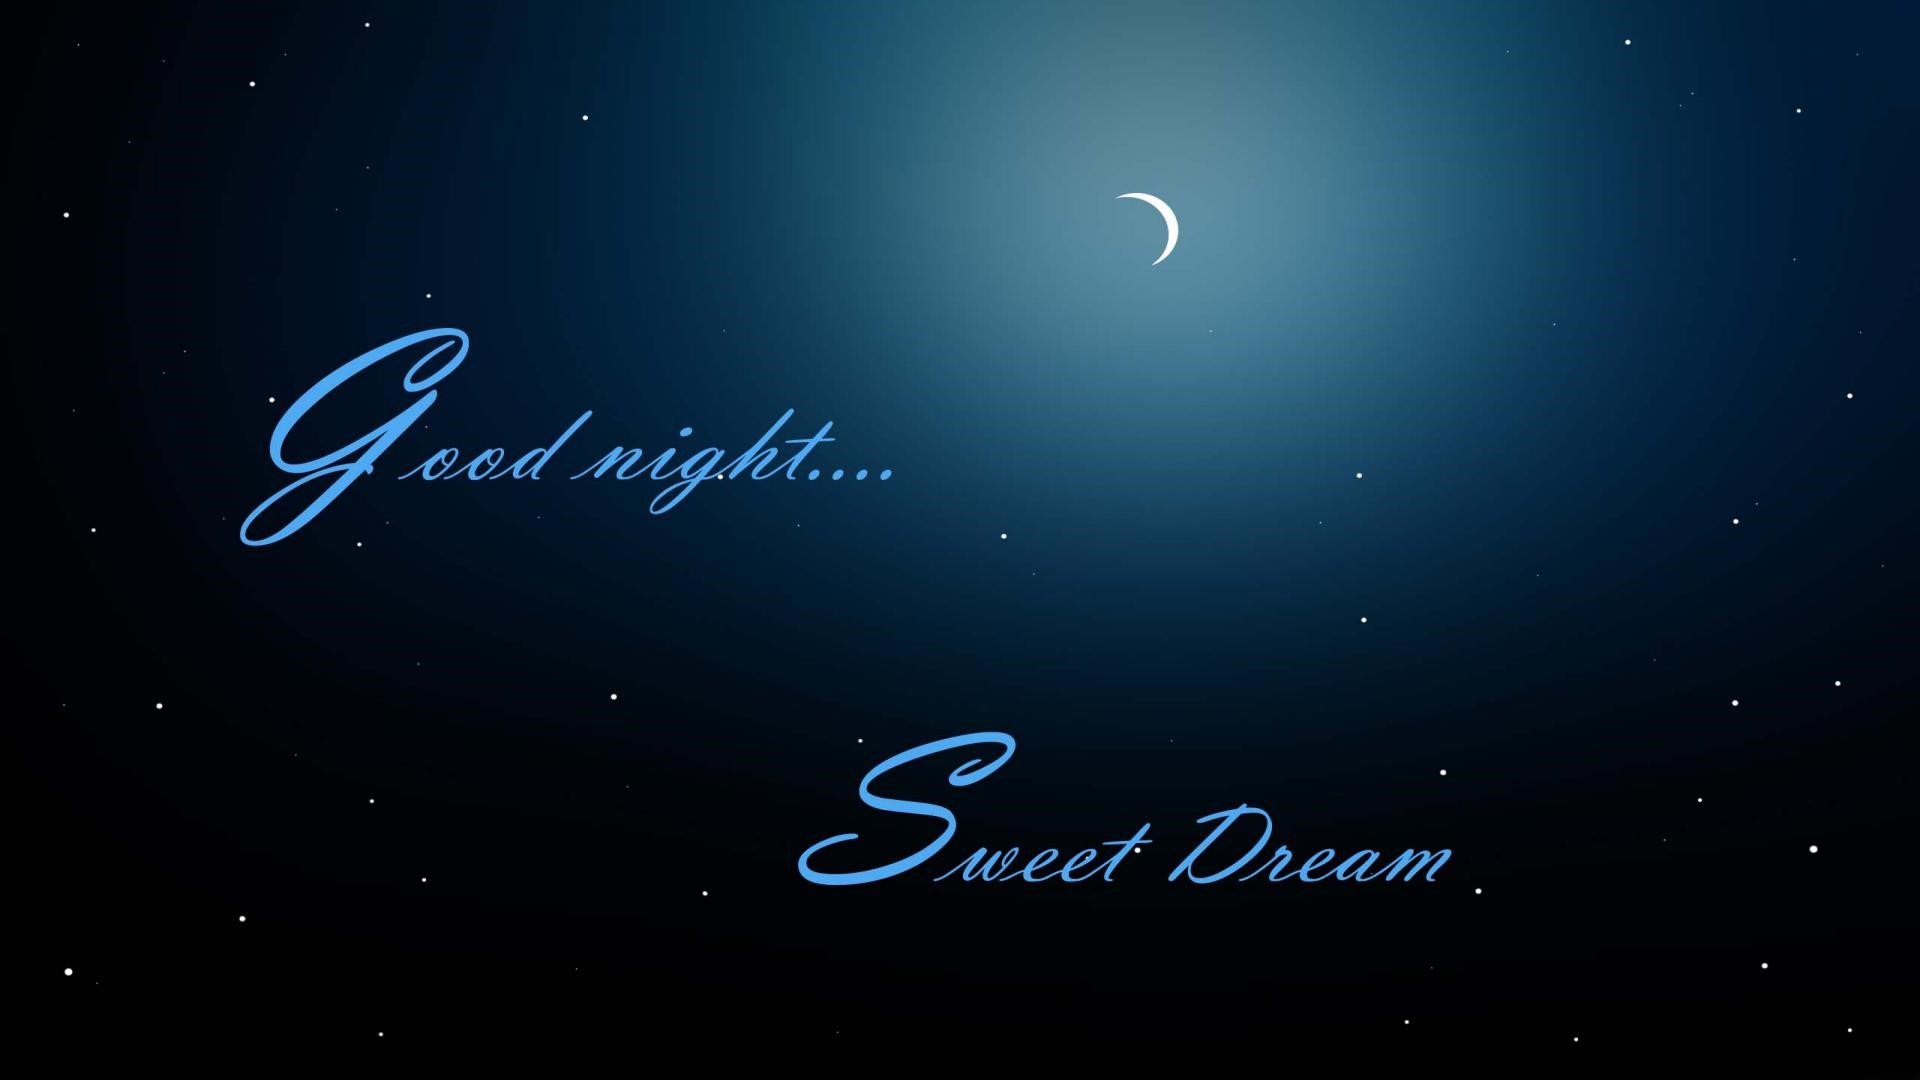 [48+] Good Night Sweet Dreams Wallpapers | Wallpapersafari.com